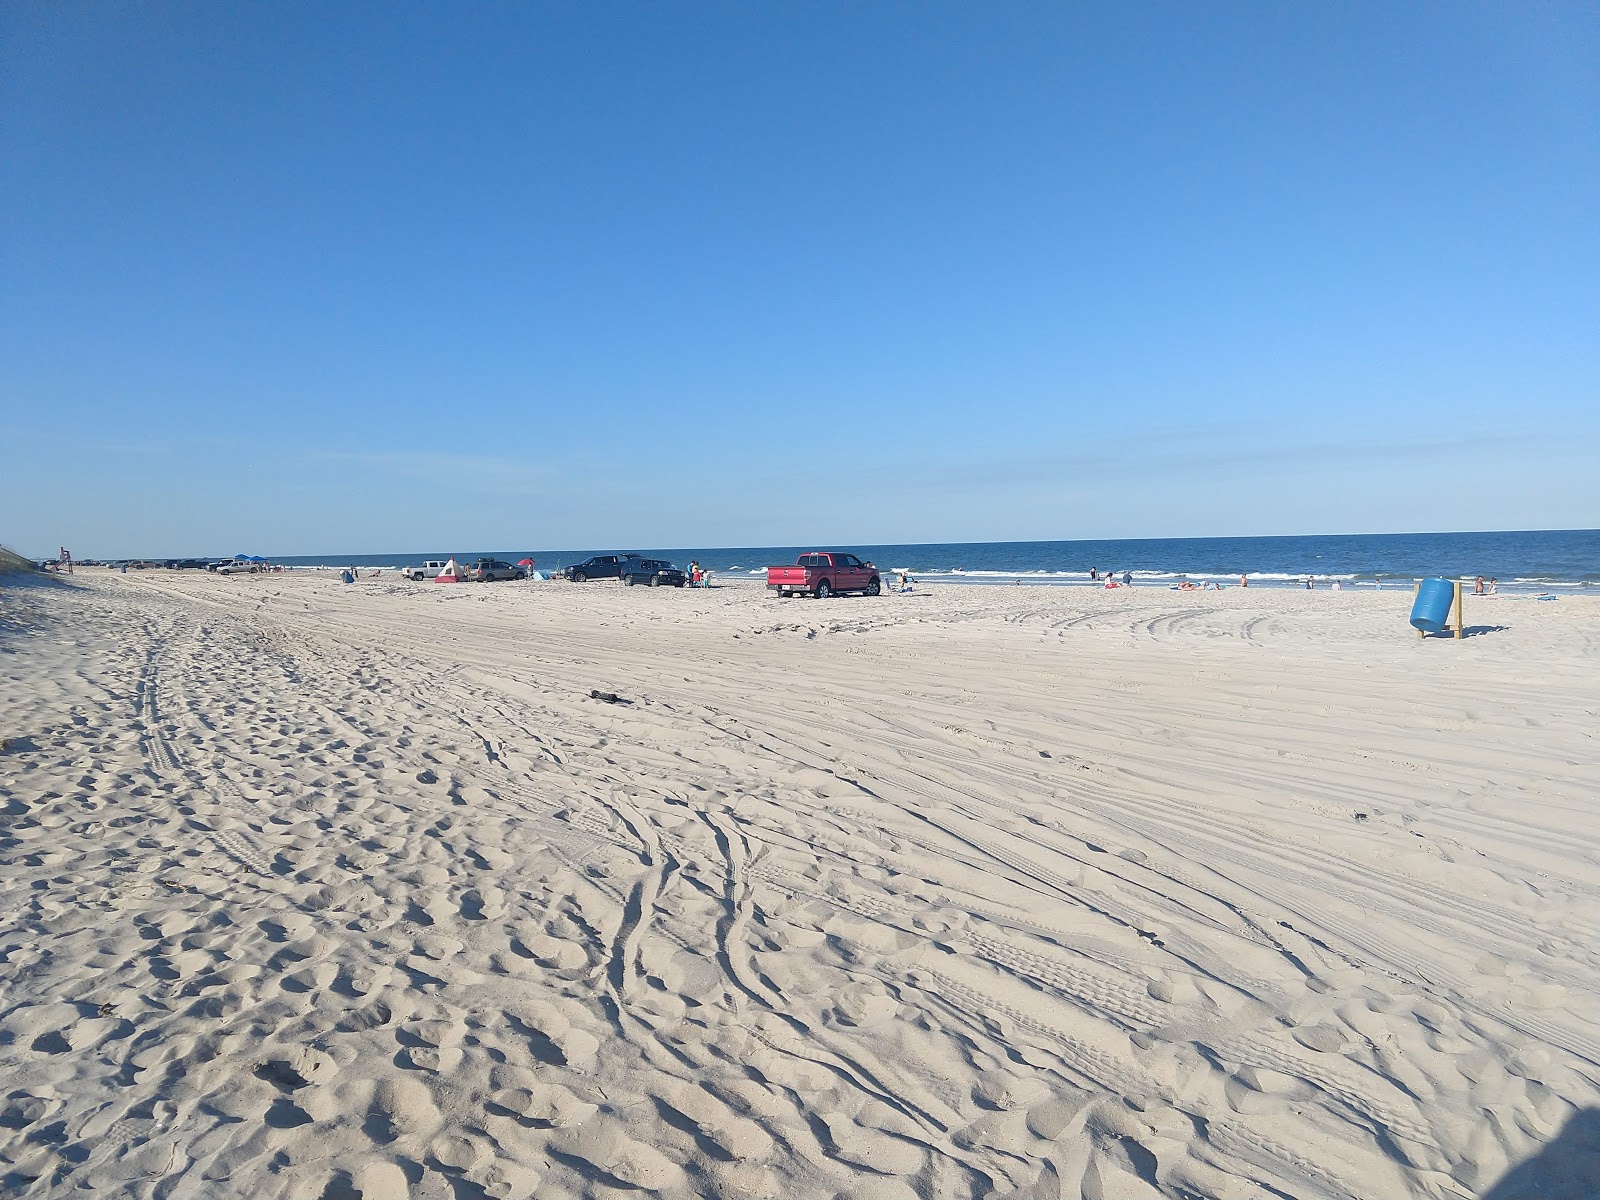 Foto de Peters Point beach - lugar popular entre los conocedores del relax